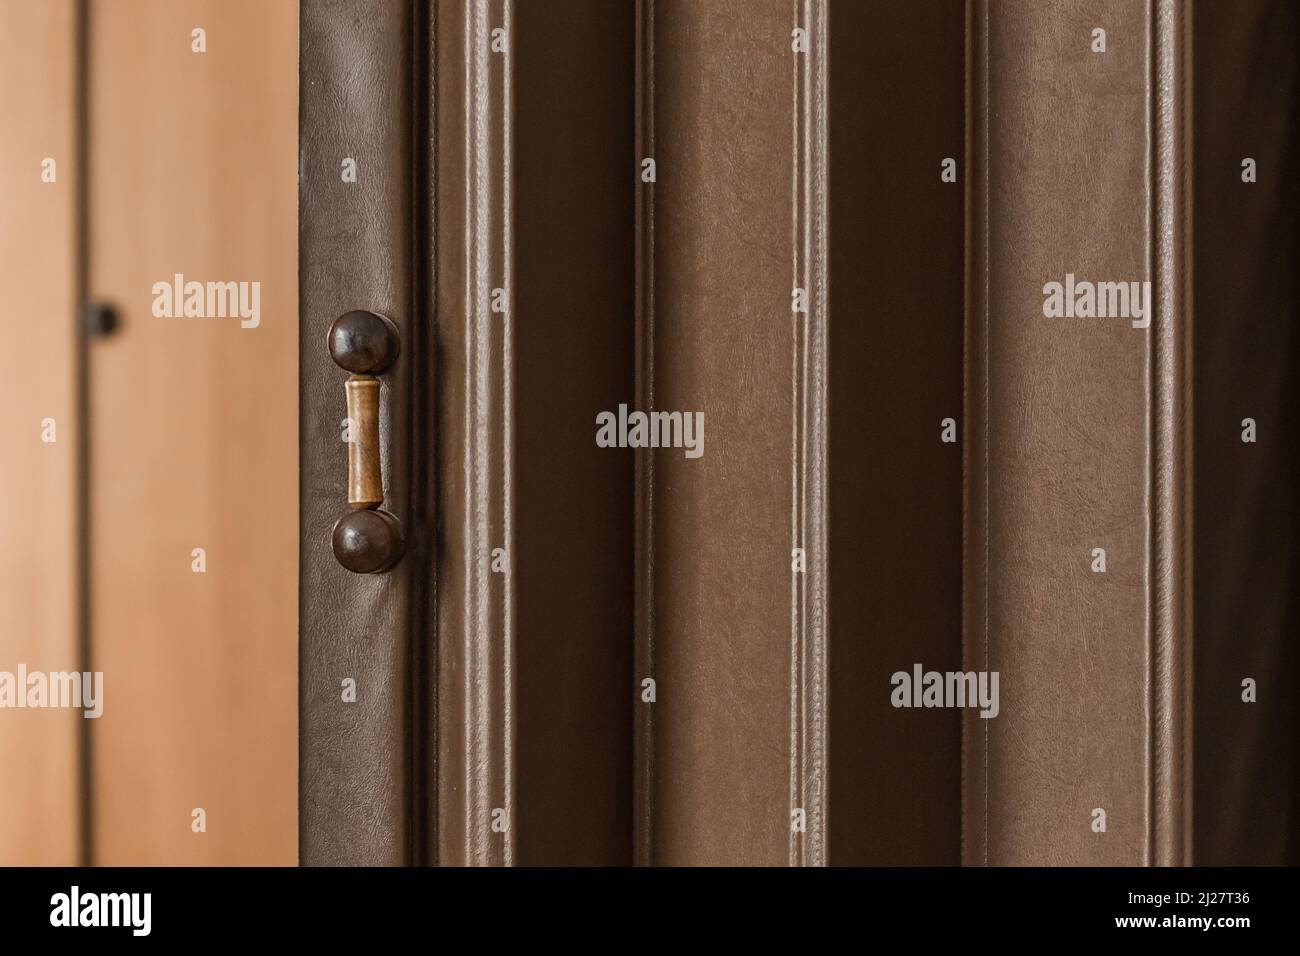 Ancienne porte coulissante antique avec poignée en bois et volets arrière-plan de style rétro rétro à motif brun. Banque D'Images